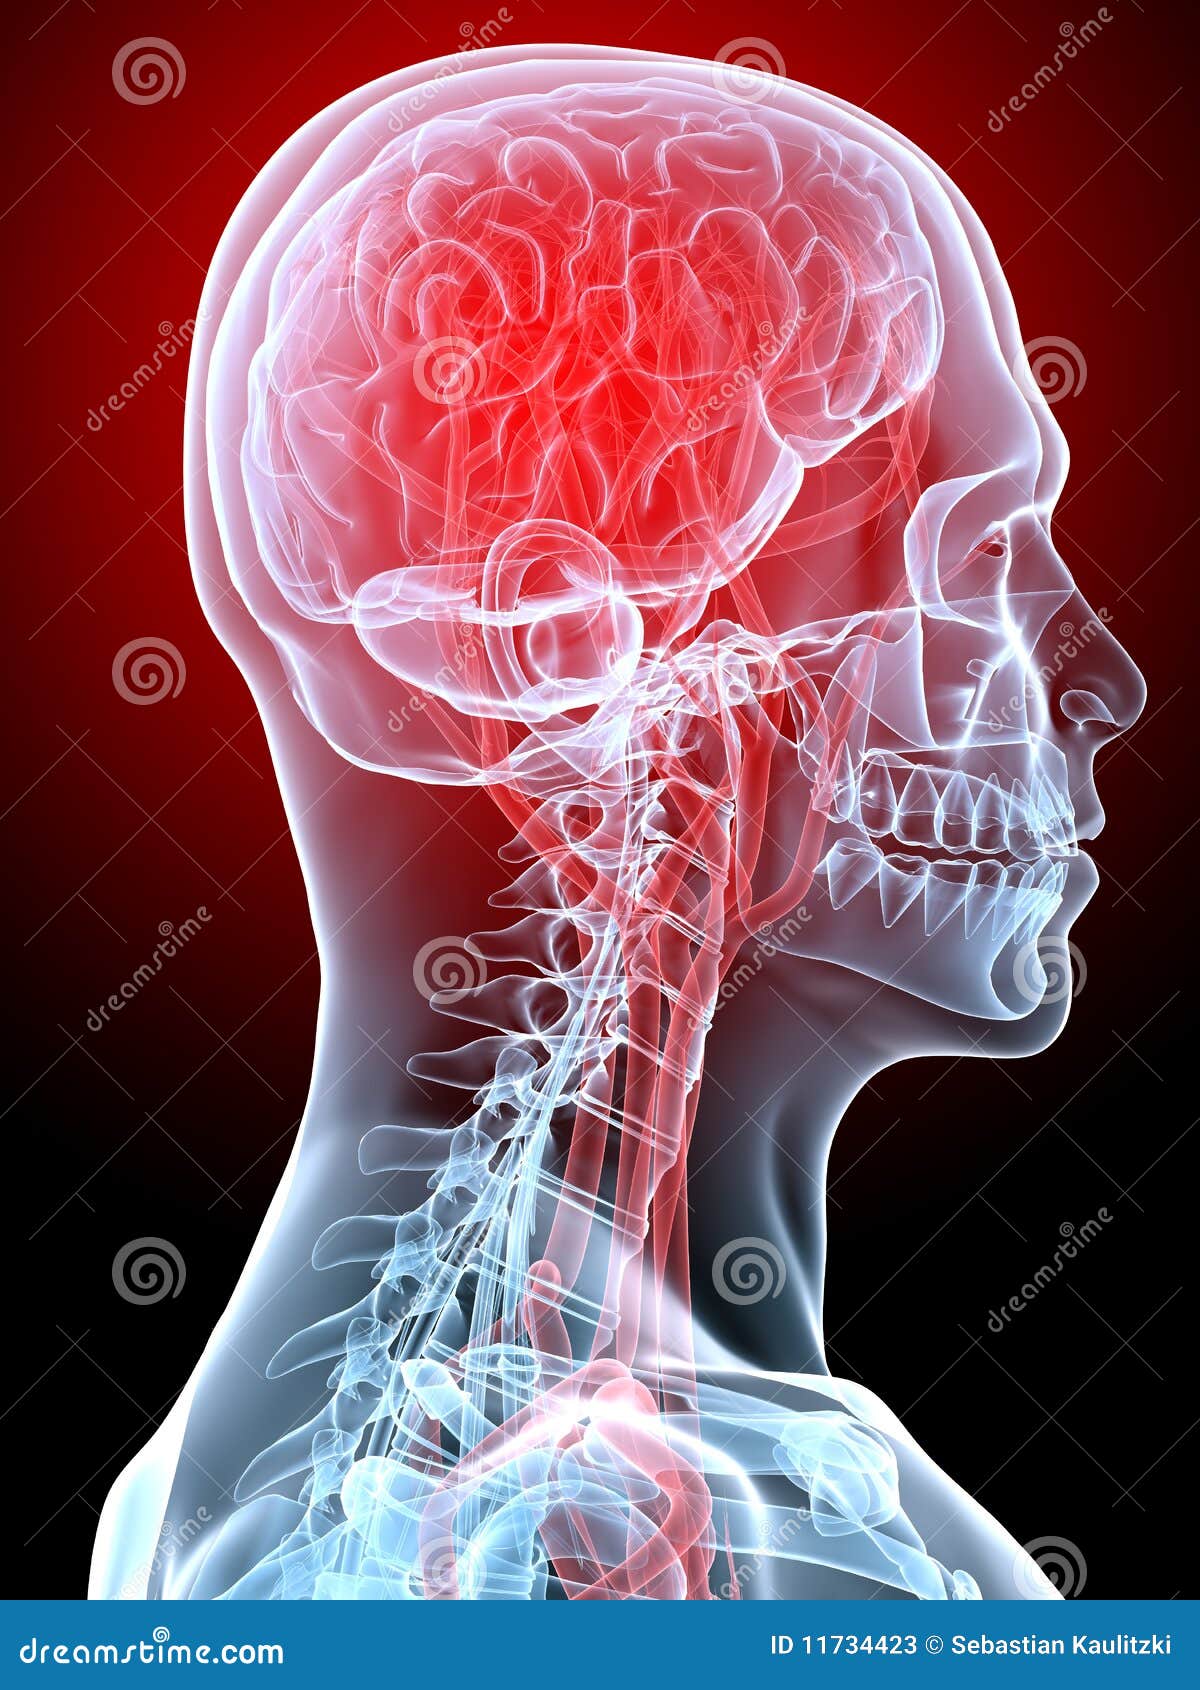 Kopfschmerzen/Migräne. 3d übertrug Röntgenstrahlabbildung des menschlichen Kopfes mit markiertem Gehirn